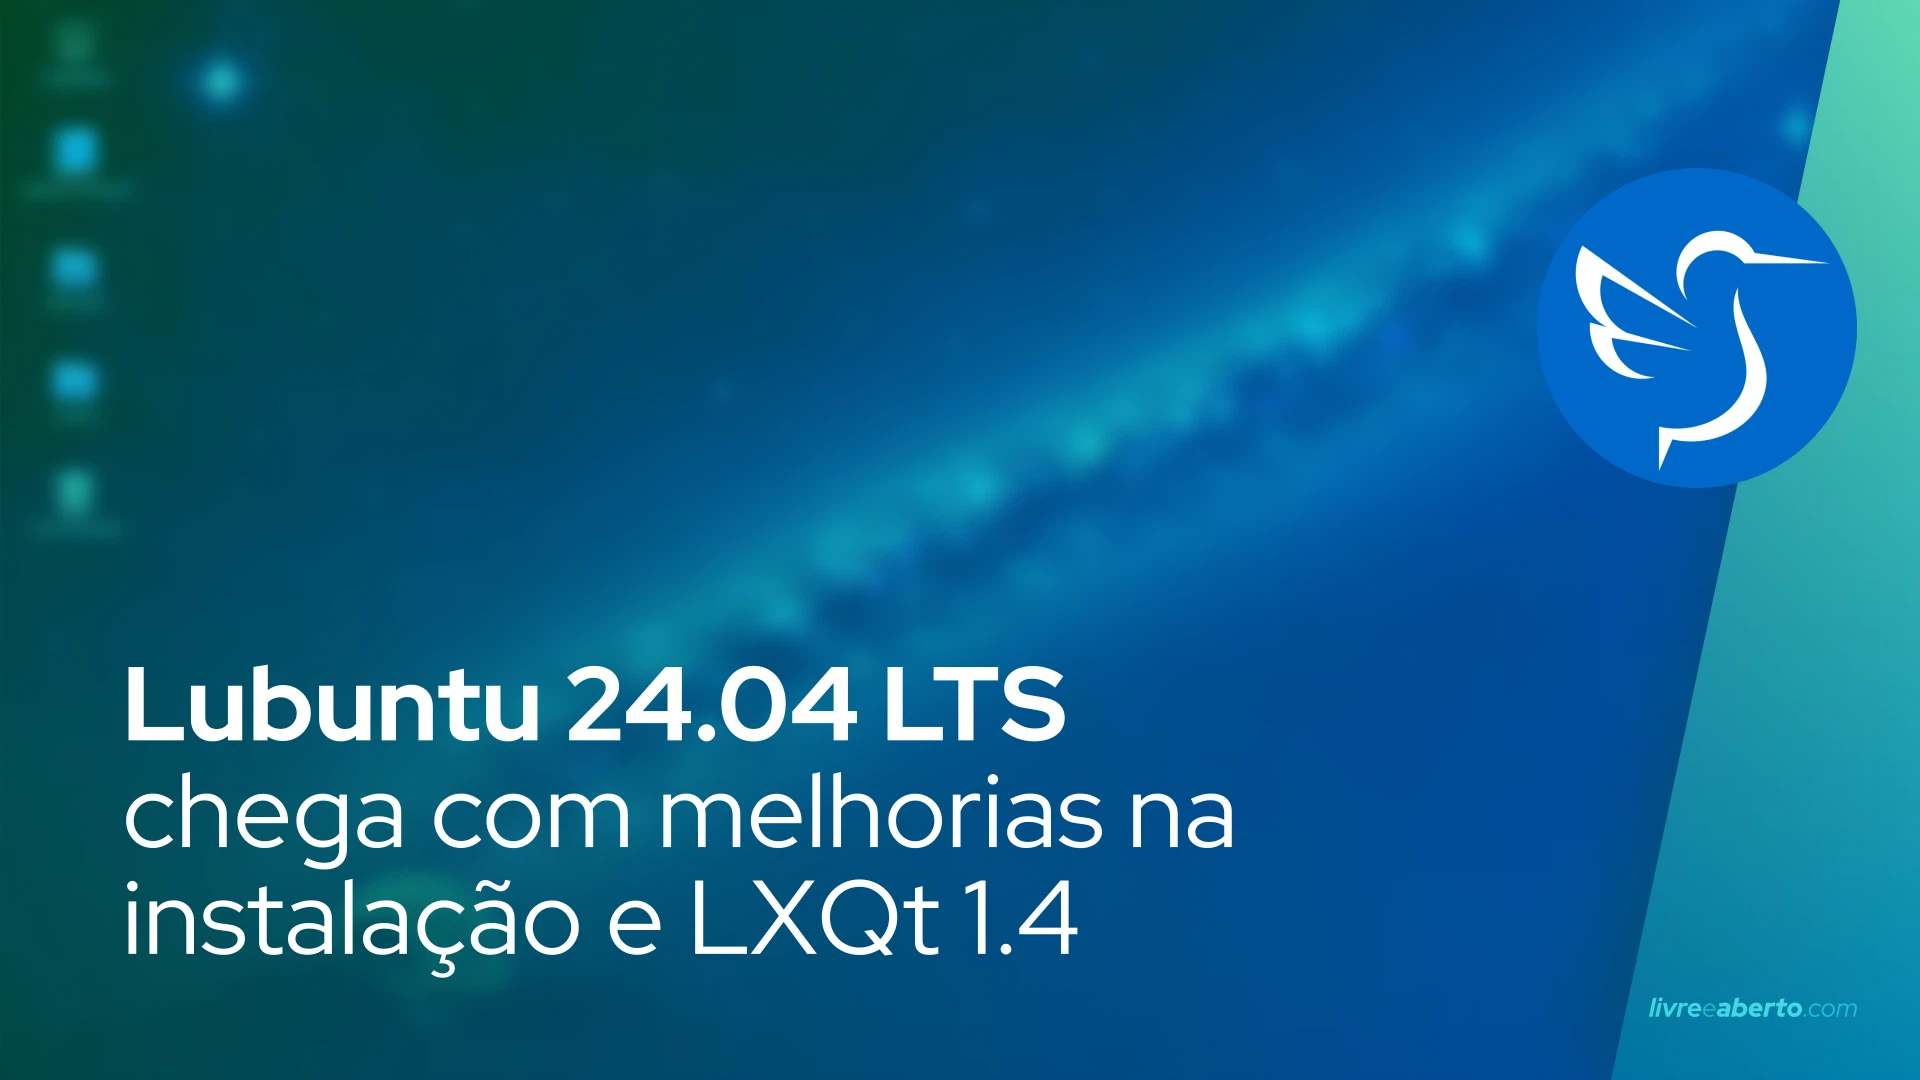 Lubuntu 24.04 LTS chega com melhorias na instalação e LXQt 1.4